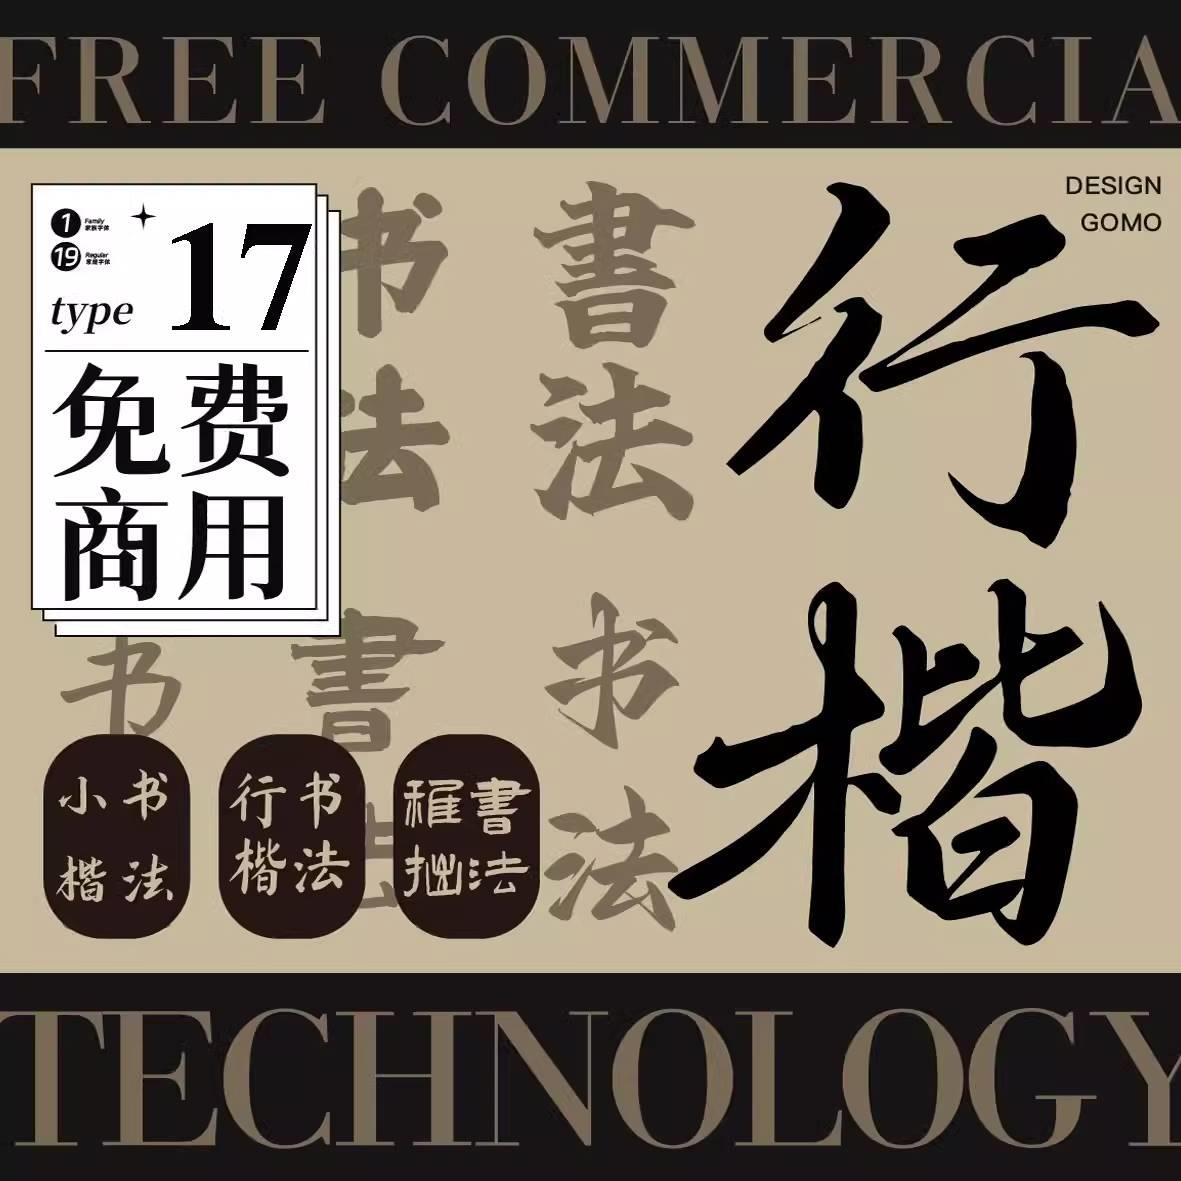 可商用字体安装包下载中文书法毛笔字楷书楷体行书AI/PS设计素材